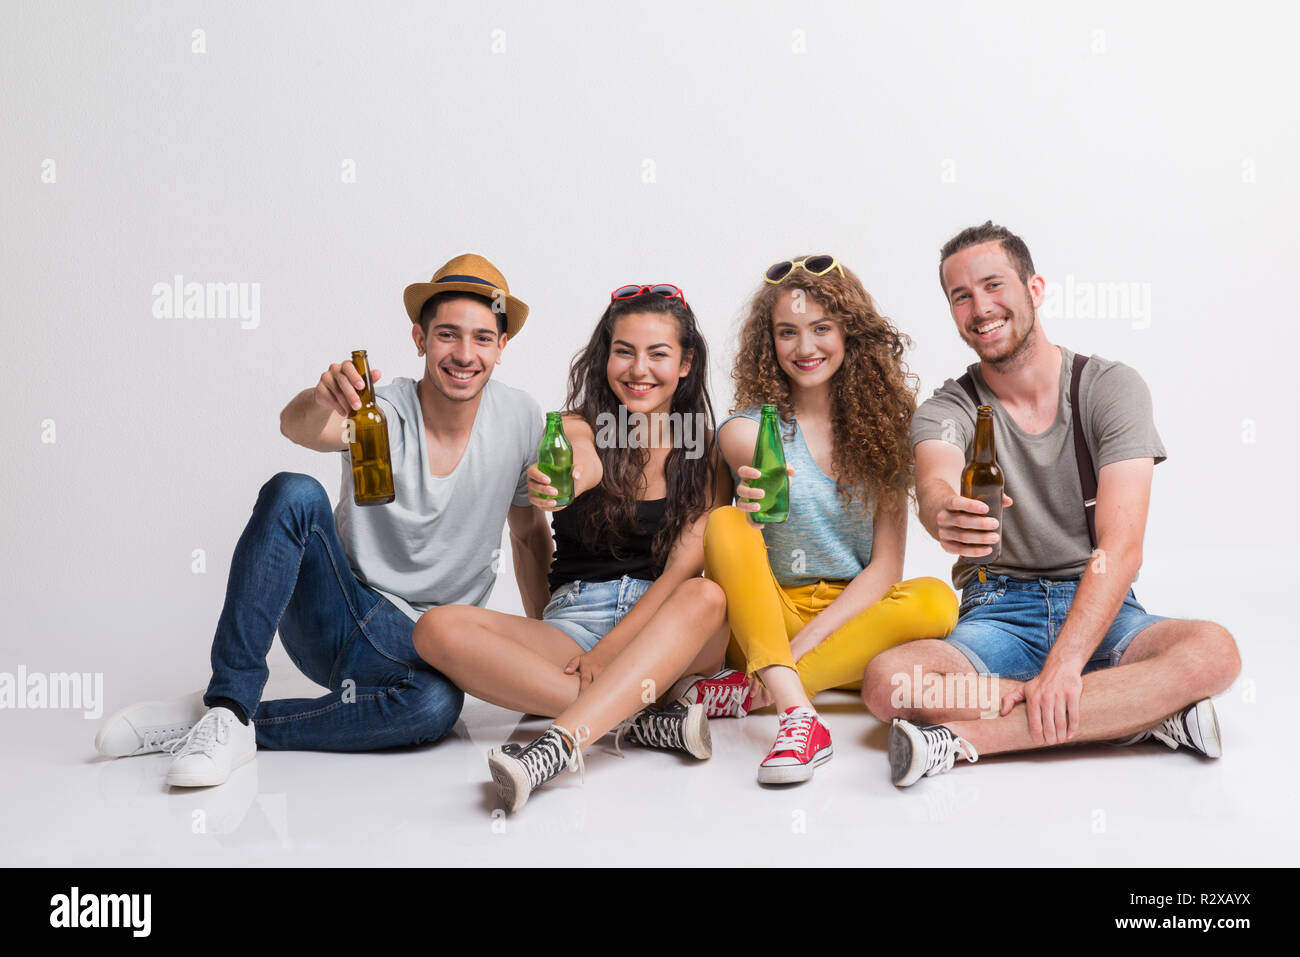 Portrait von freudige junge Gruppe von Freunden mit Flaschen auf dem Boden sitzend in einem Studio. Stockfoto